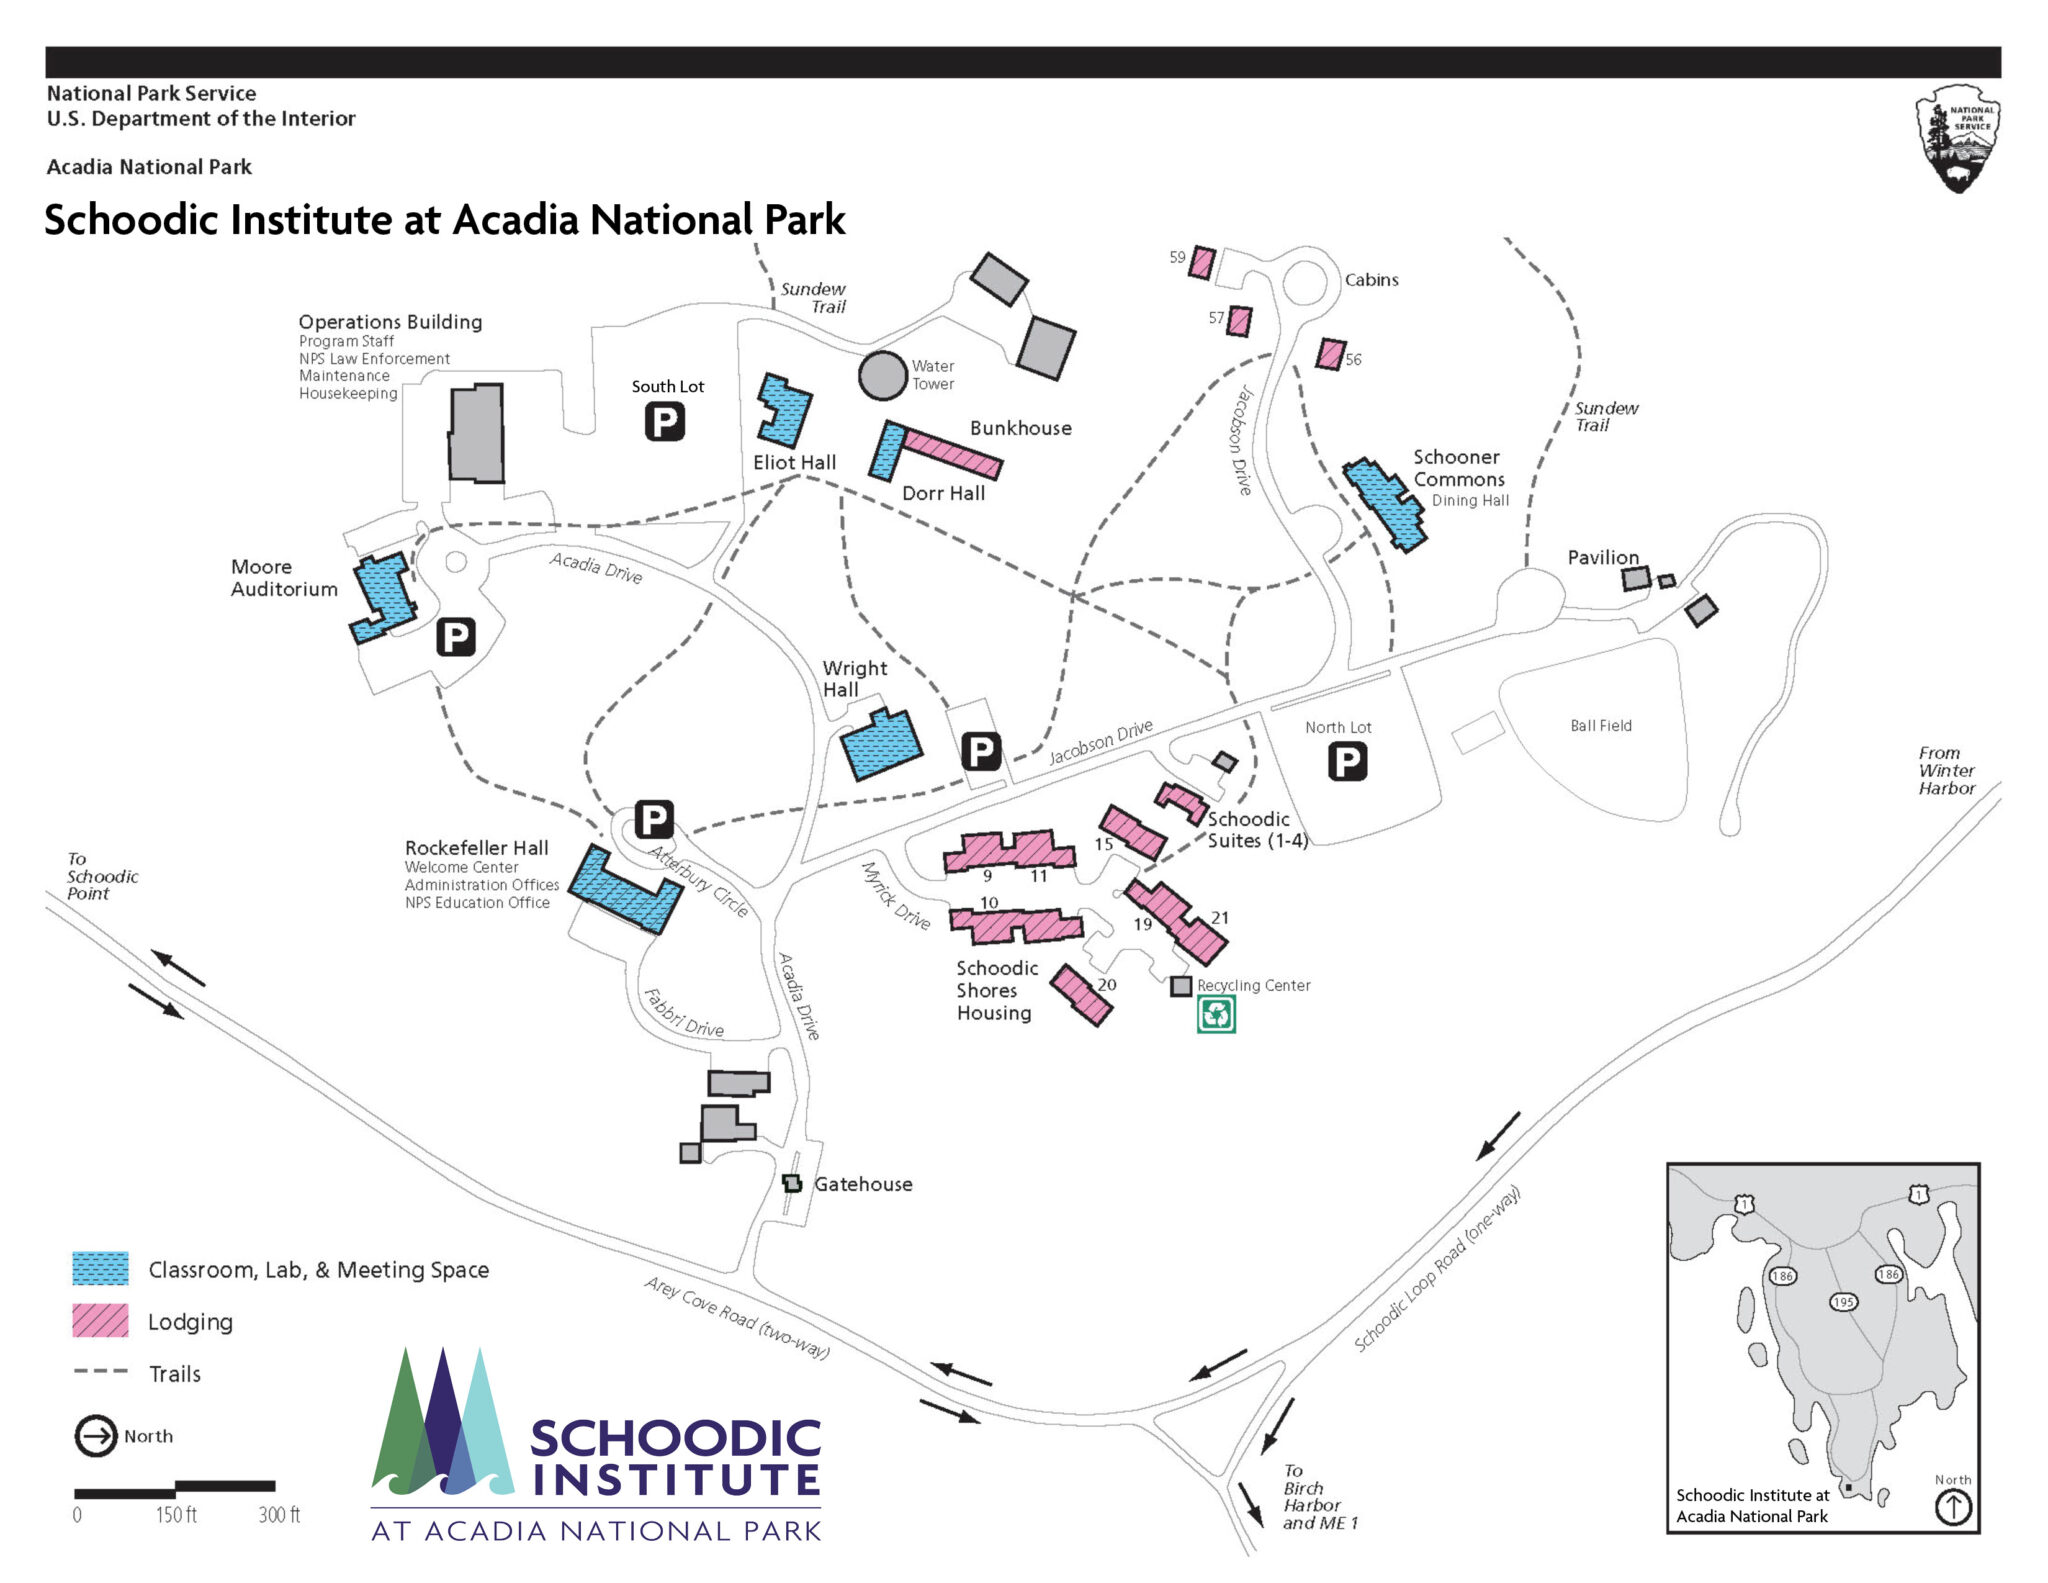 Schoodic Institute's campus map